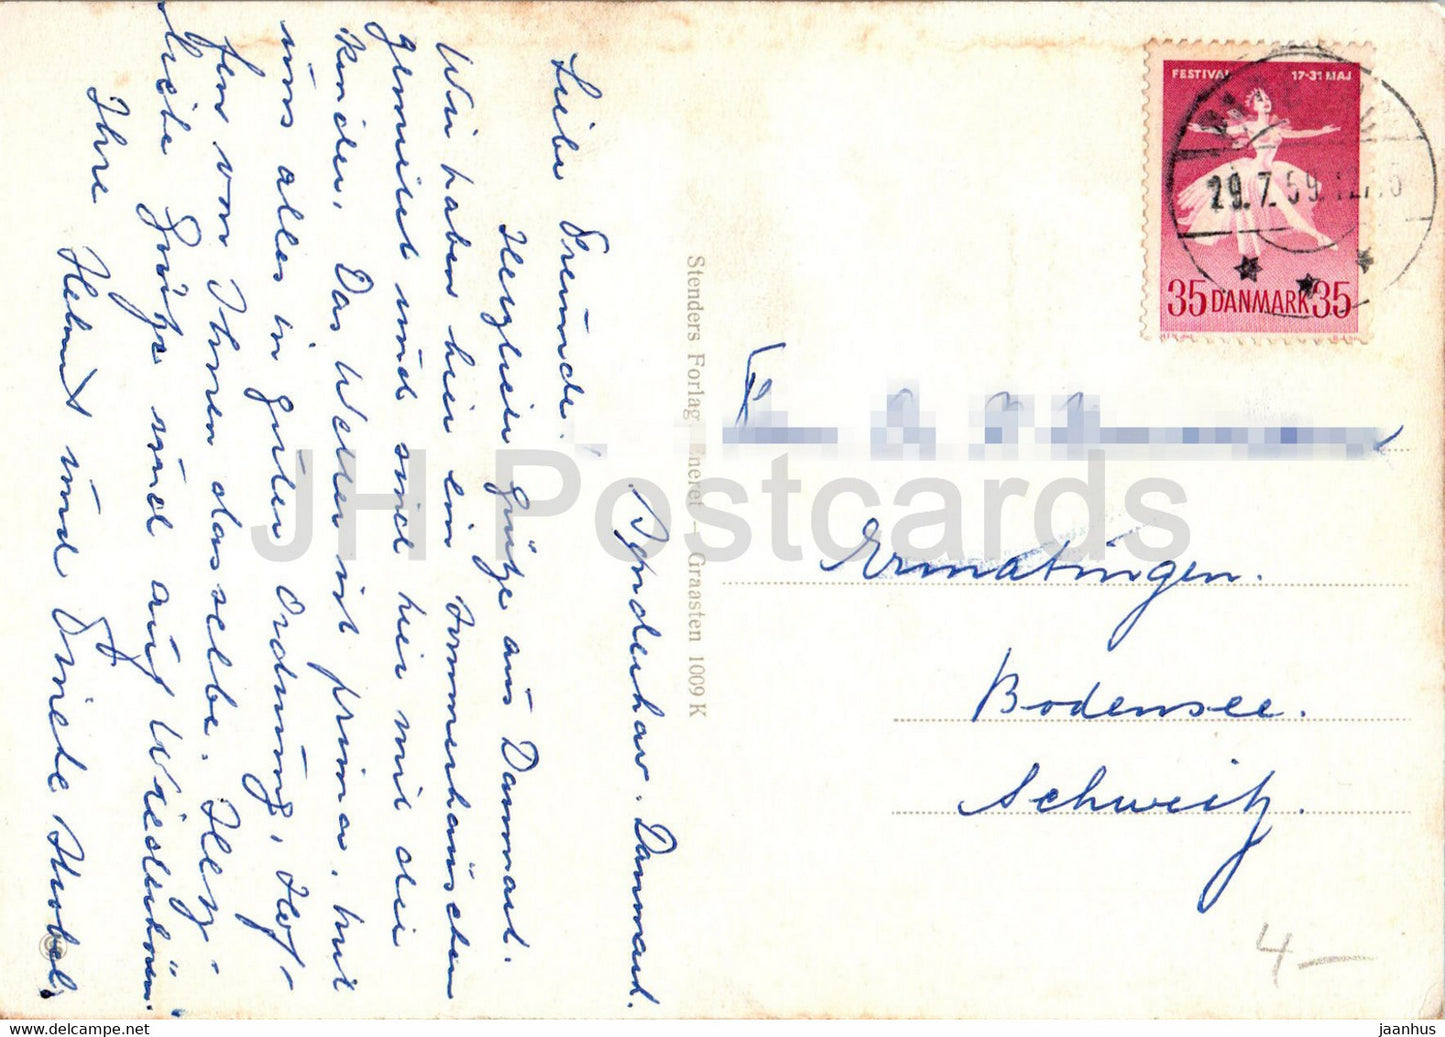 Graasten Slot - château - cartes postales anciennes - 1009 - 1959 - Danemark - utilisé